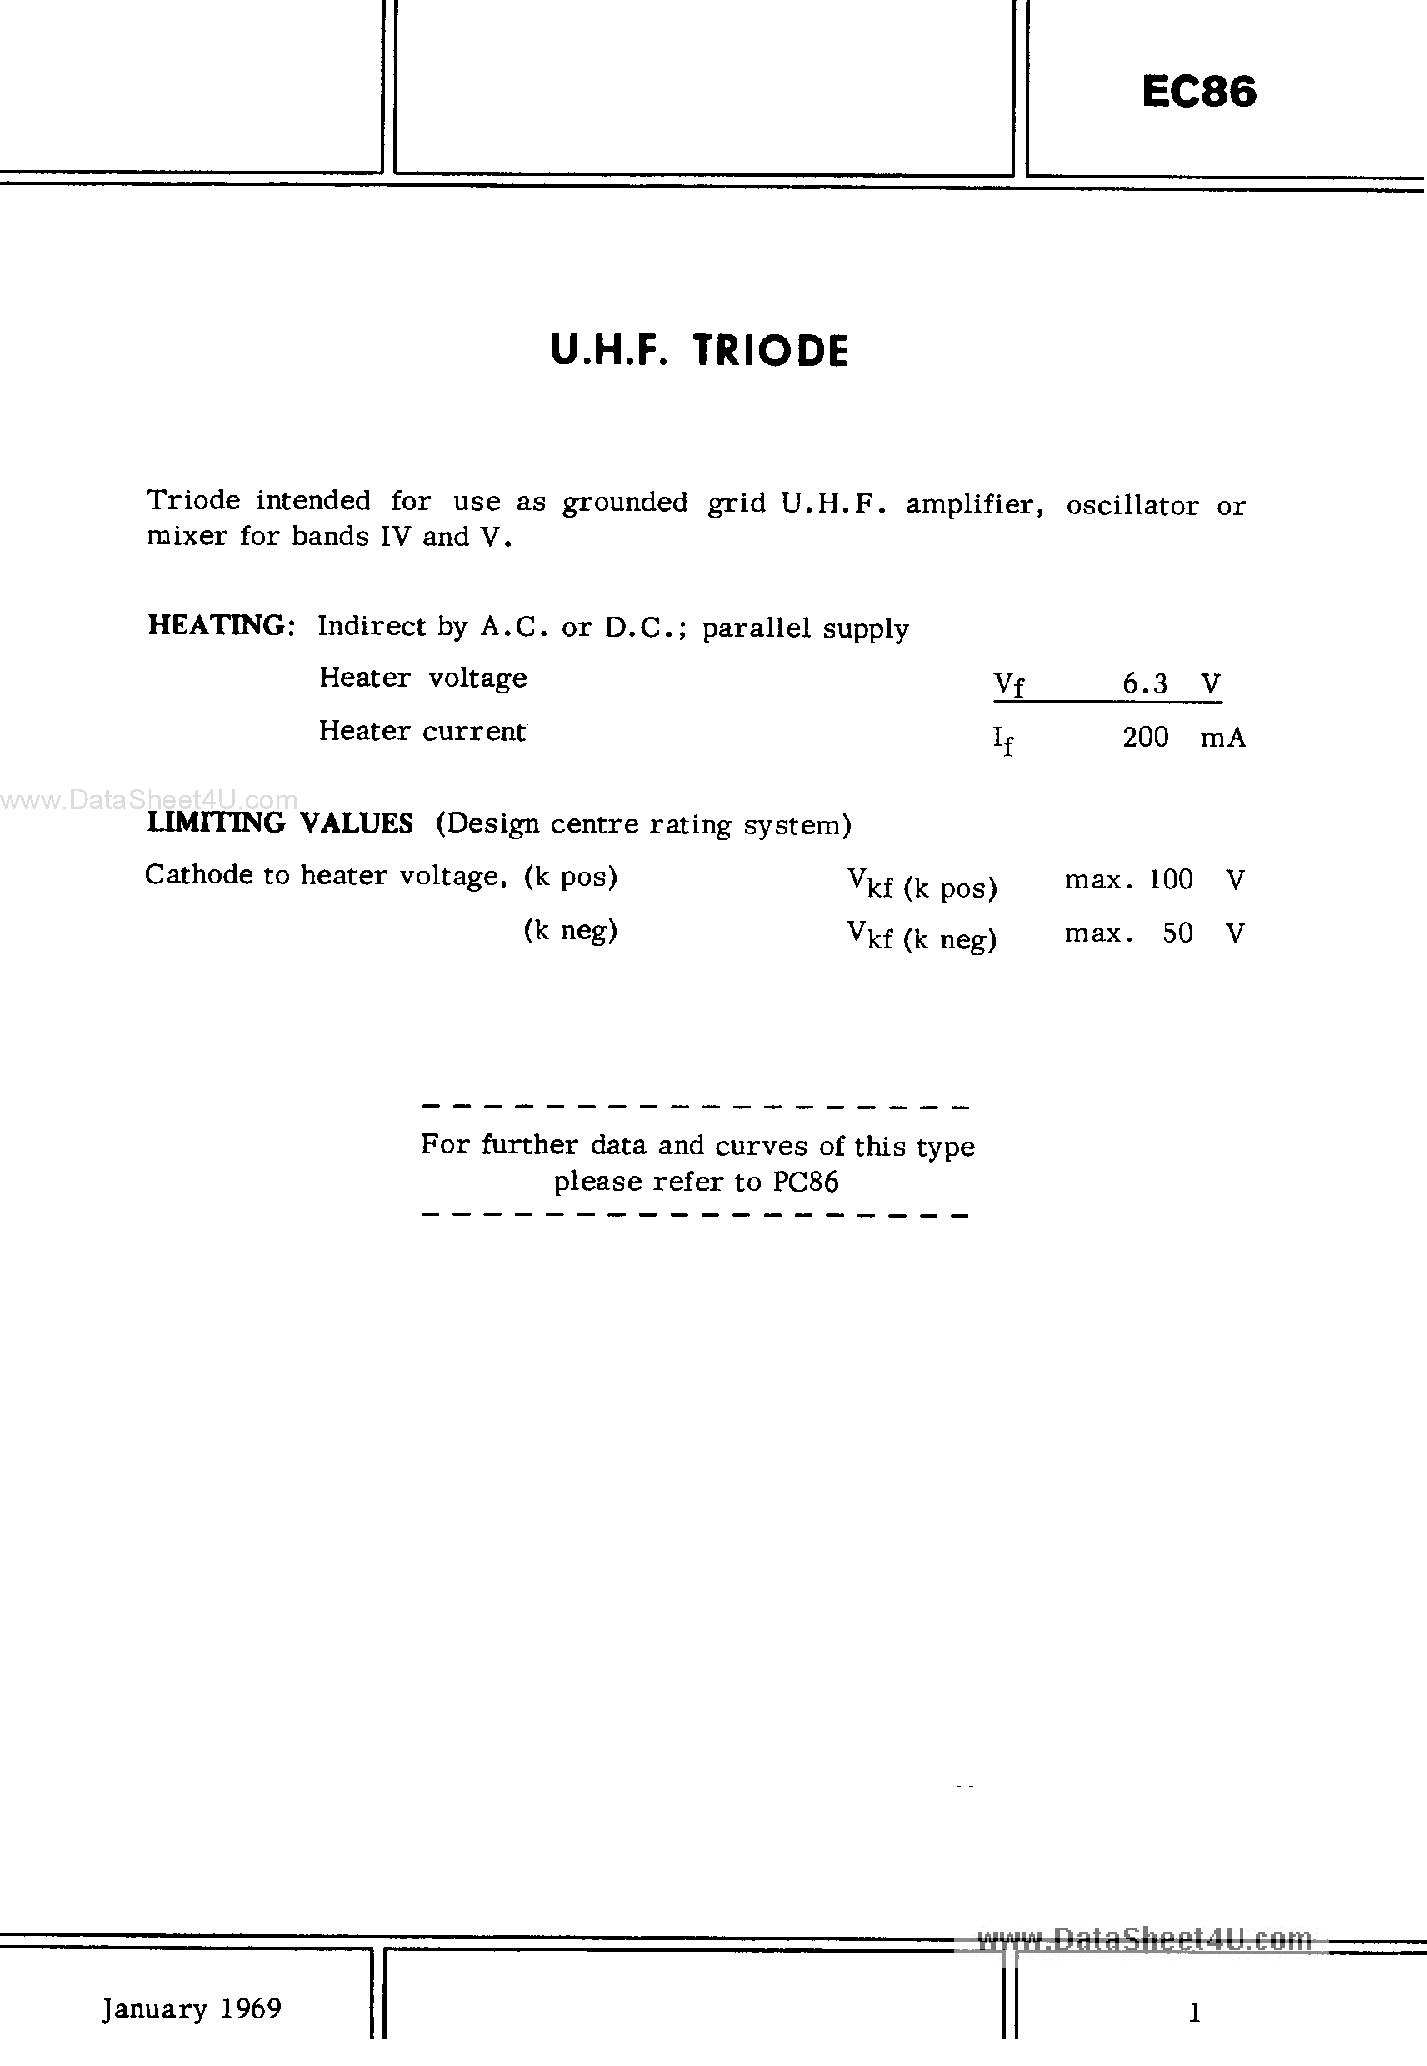 Даташит EC86 - U.H.F TRIODE страница 1